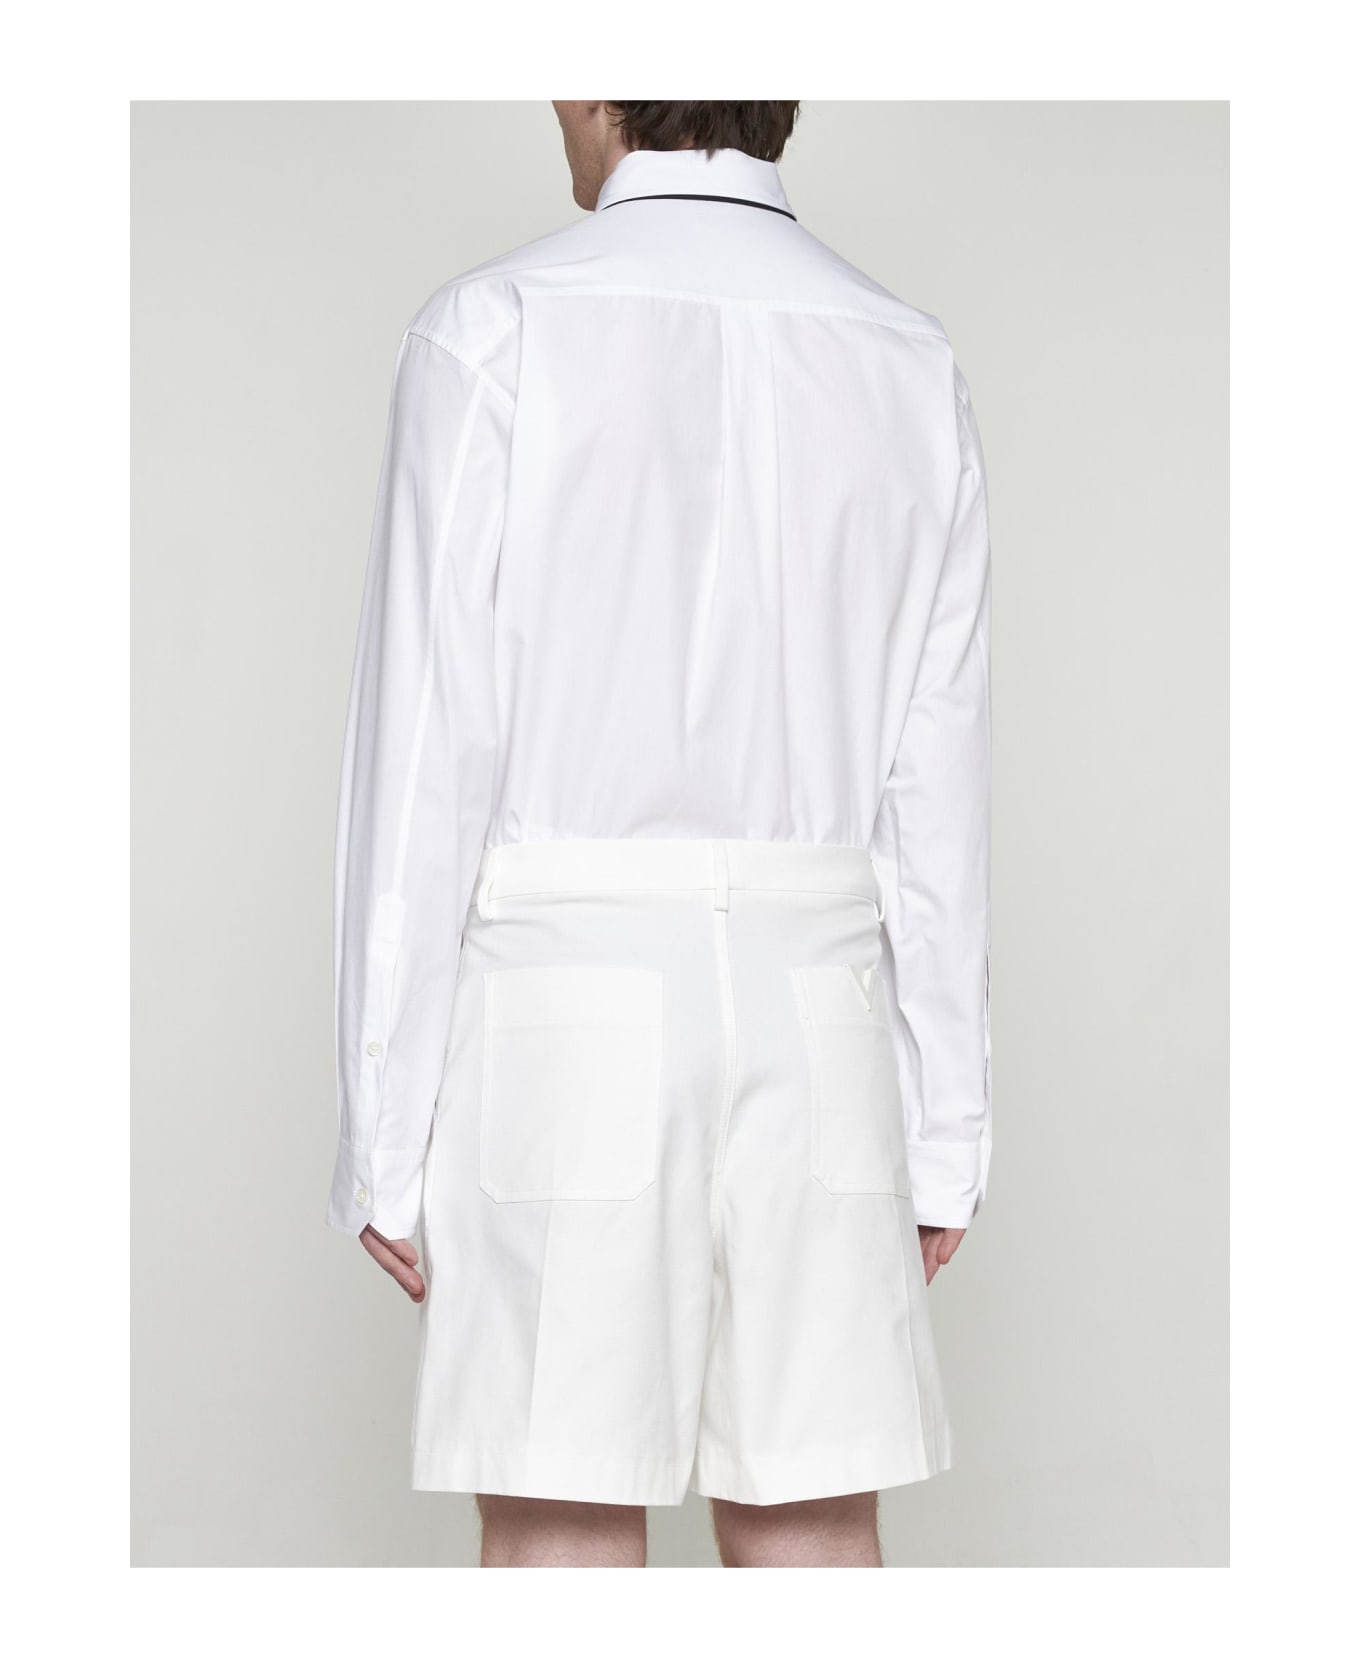 Valentino Garavani Bermuda Shorts - White